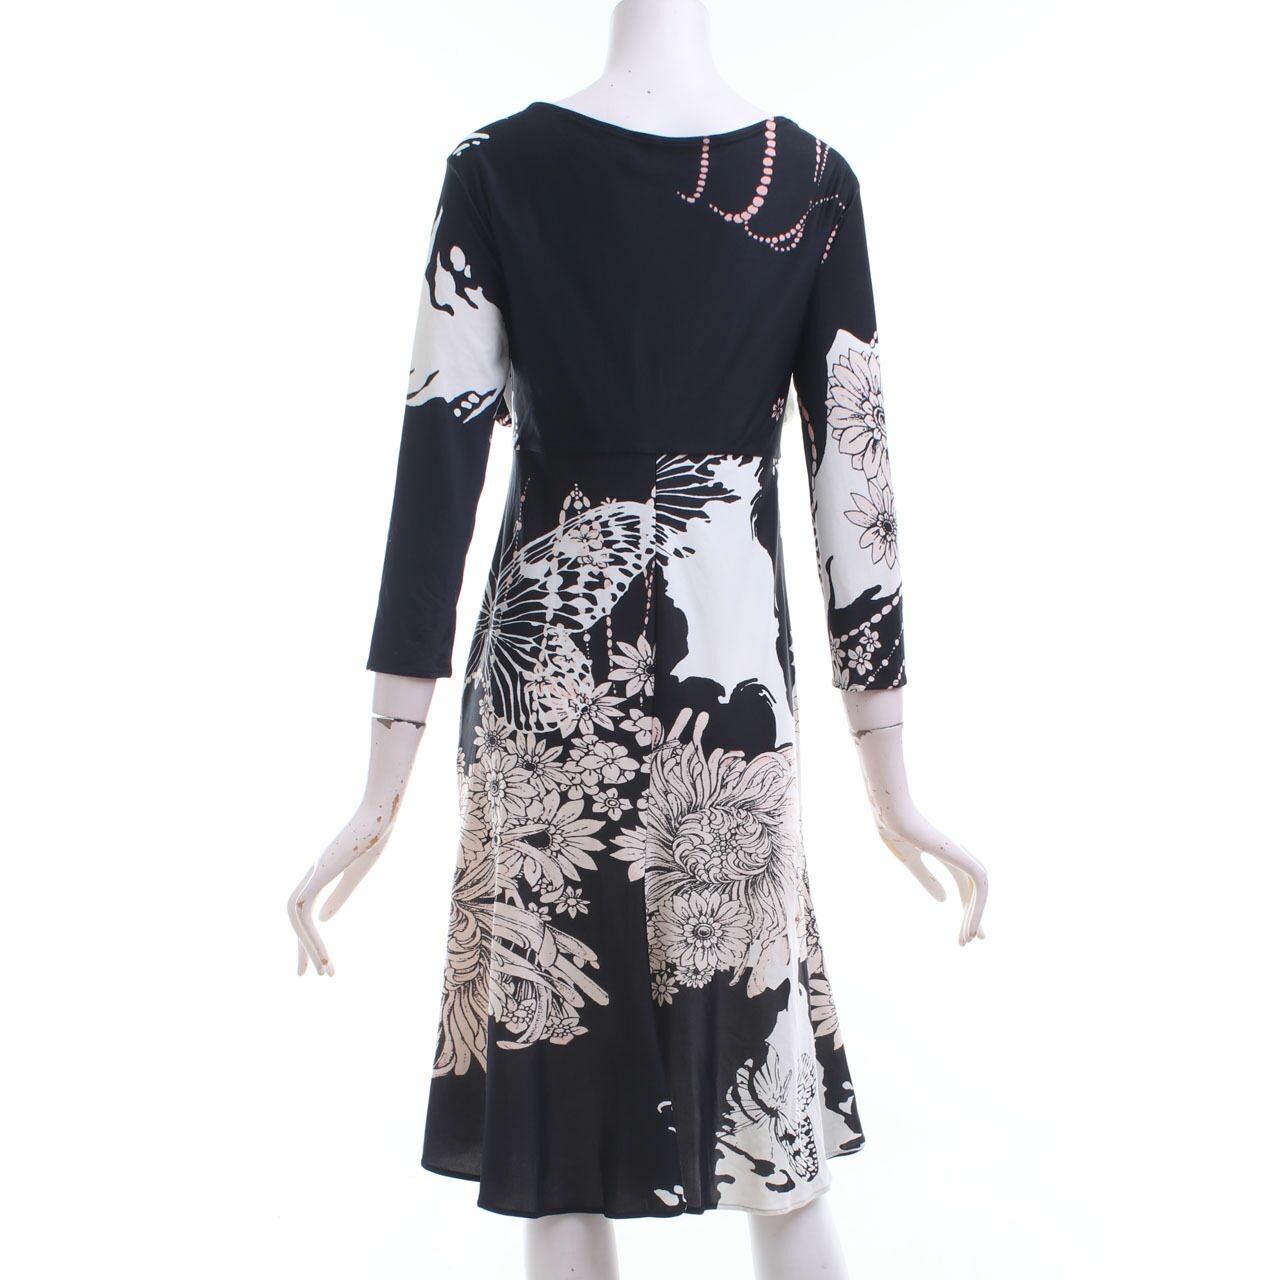 Roberto Cavalli Black & White Patterned Mini Dress